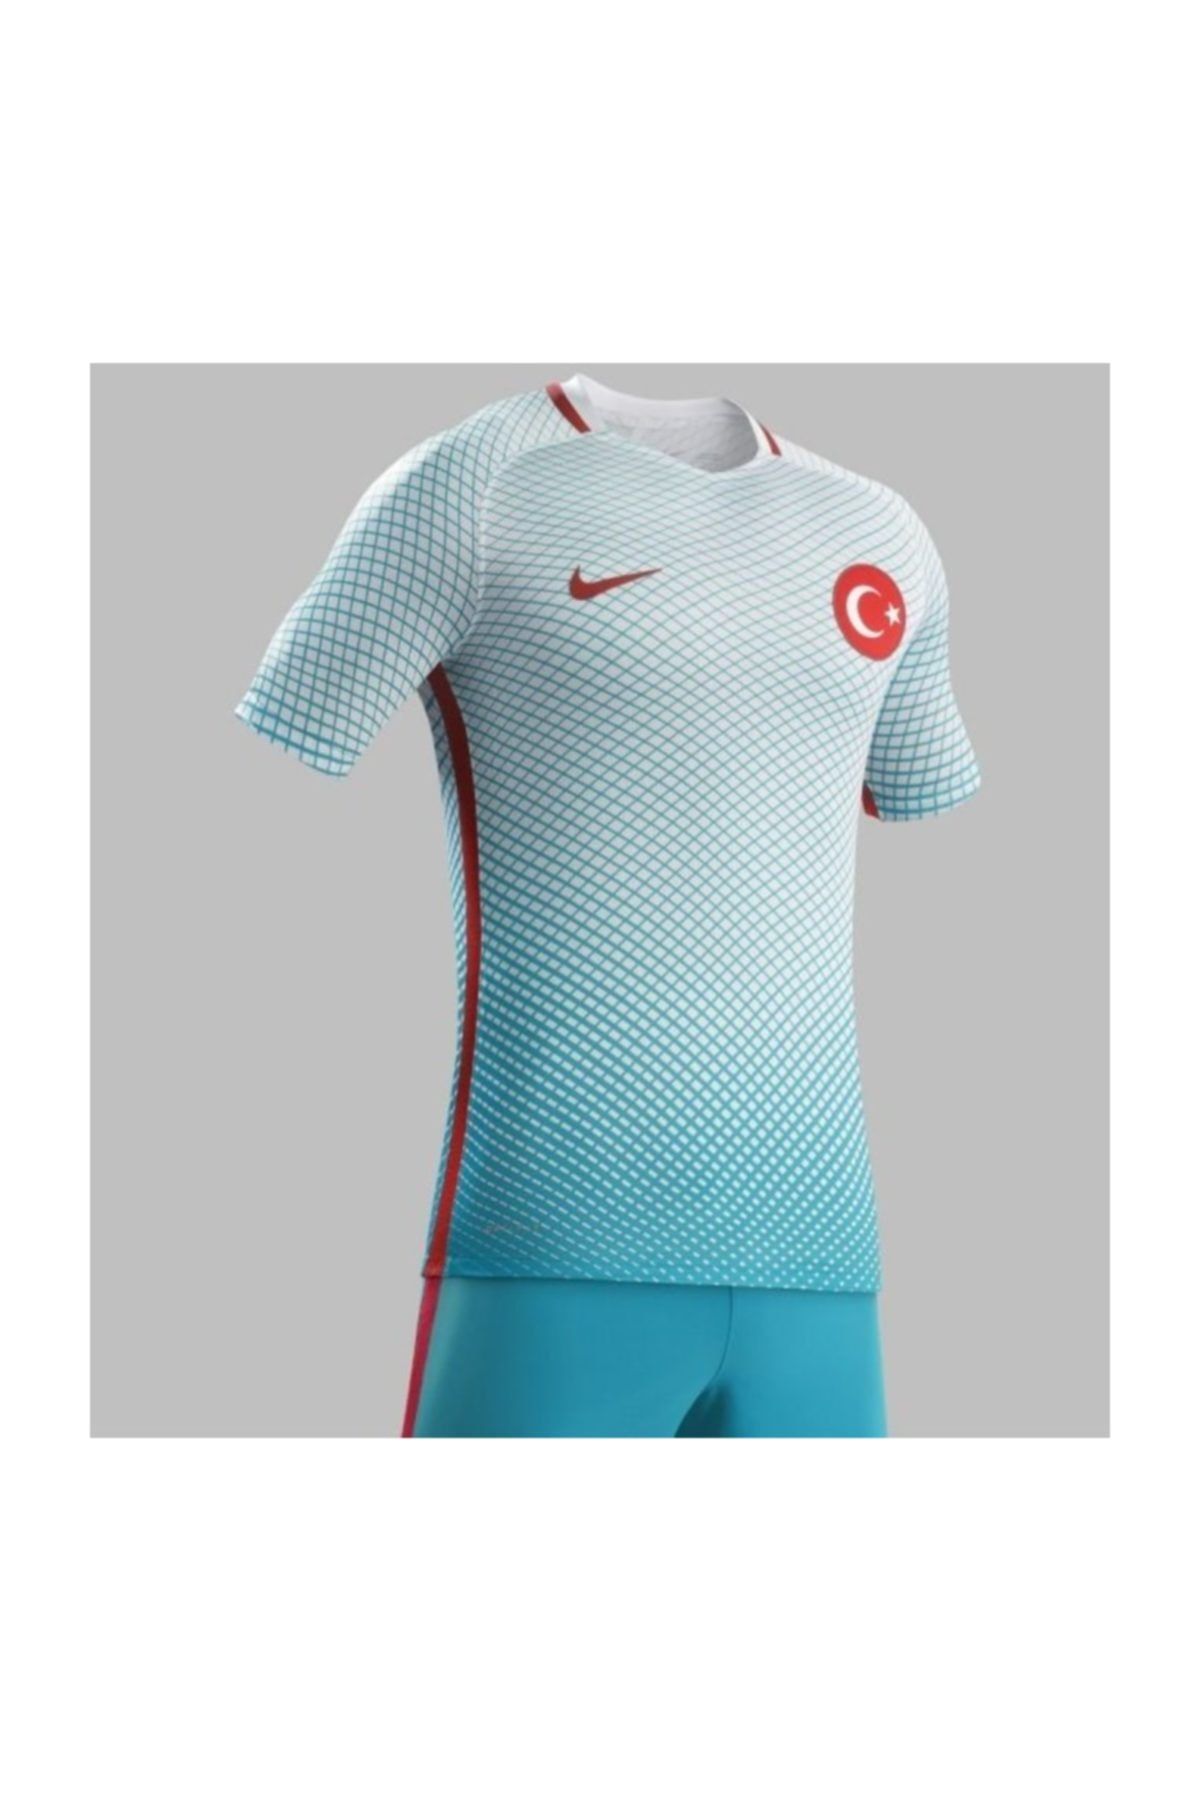 Nike Turkuaz Orijjinal İmzalı Lisanslı Türkiye Milli Takım Forma